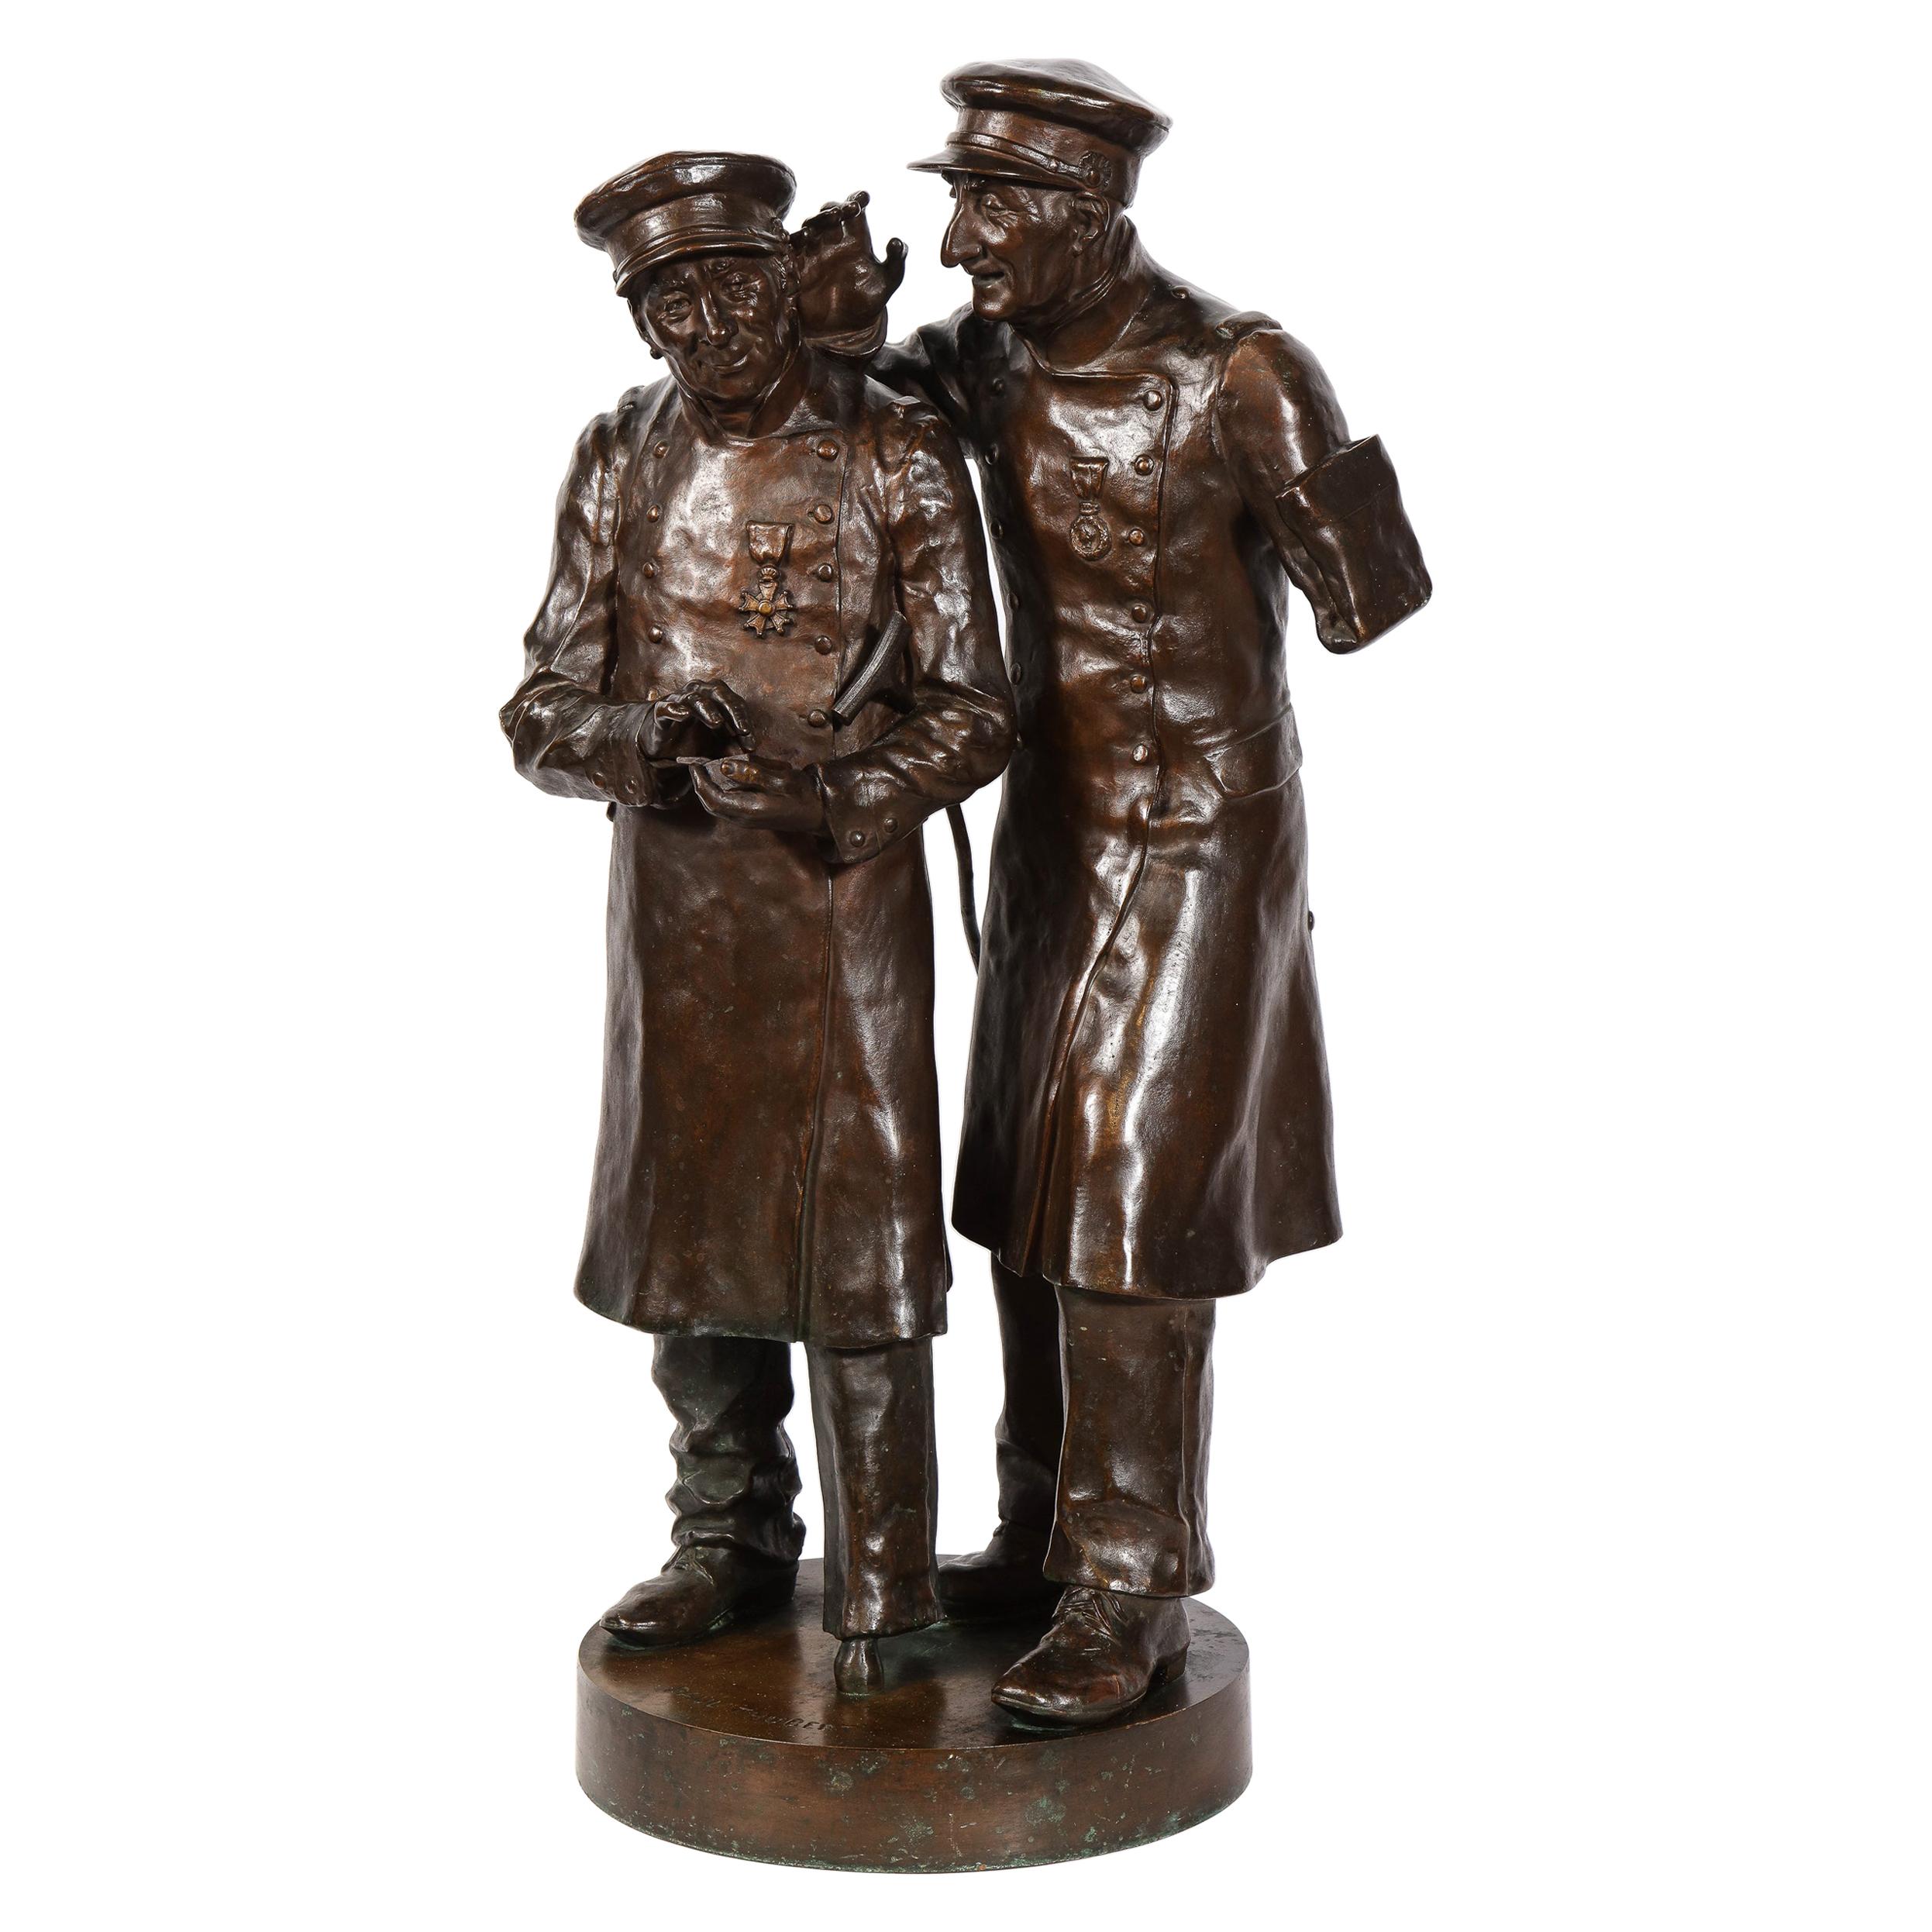 Paul Thubert „Englisch, 19. Jahrhundert“, eine große Bronzeskulptur von Kriegsveteranen